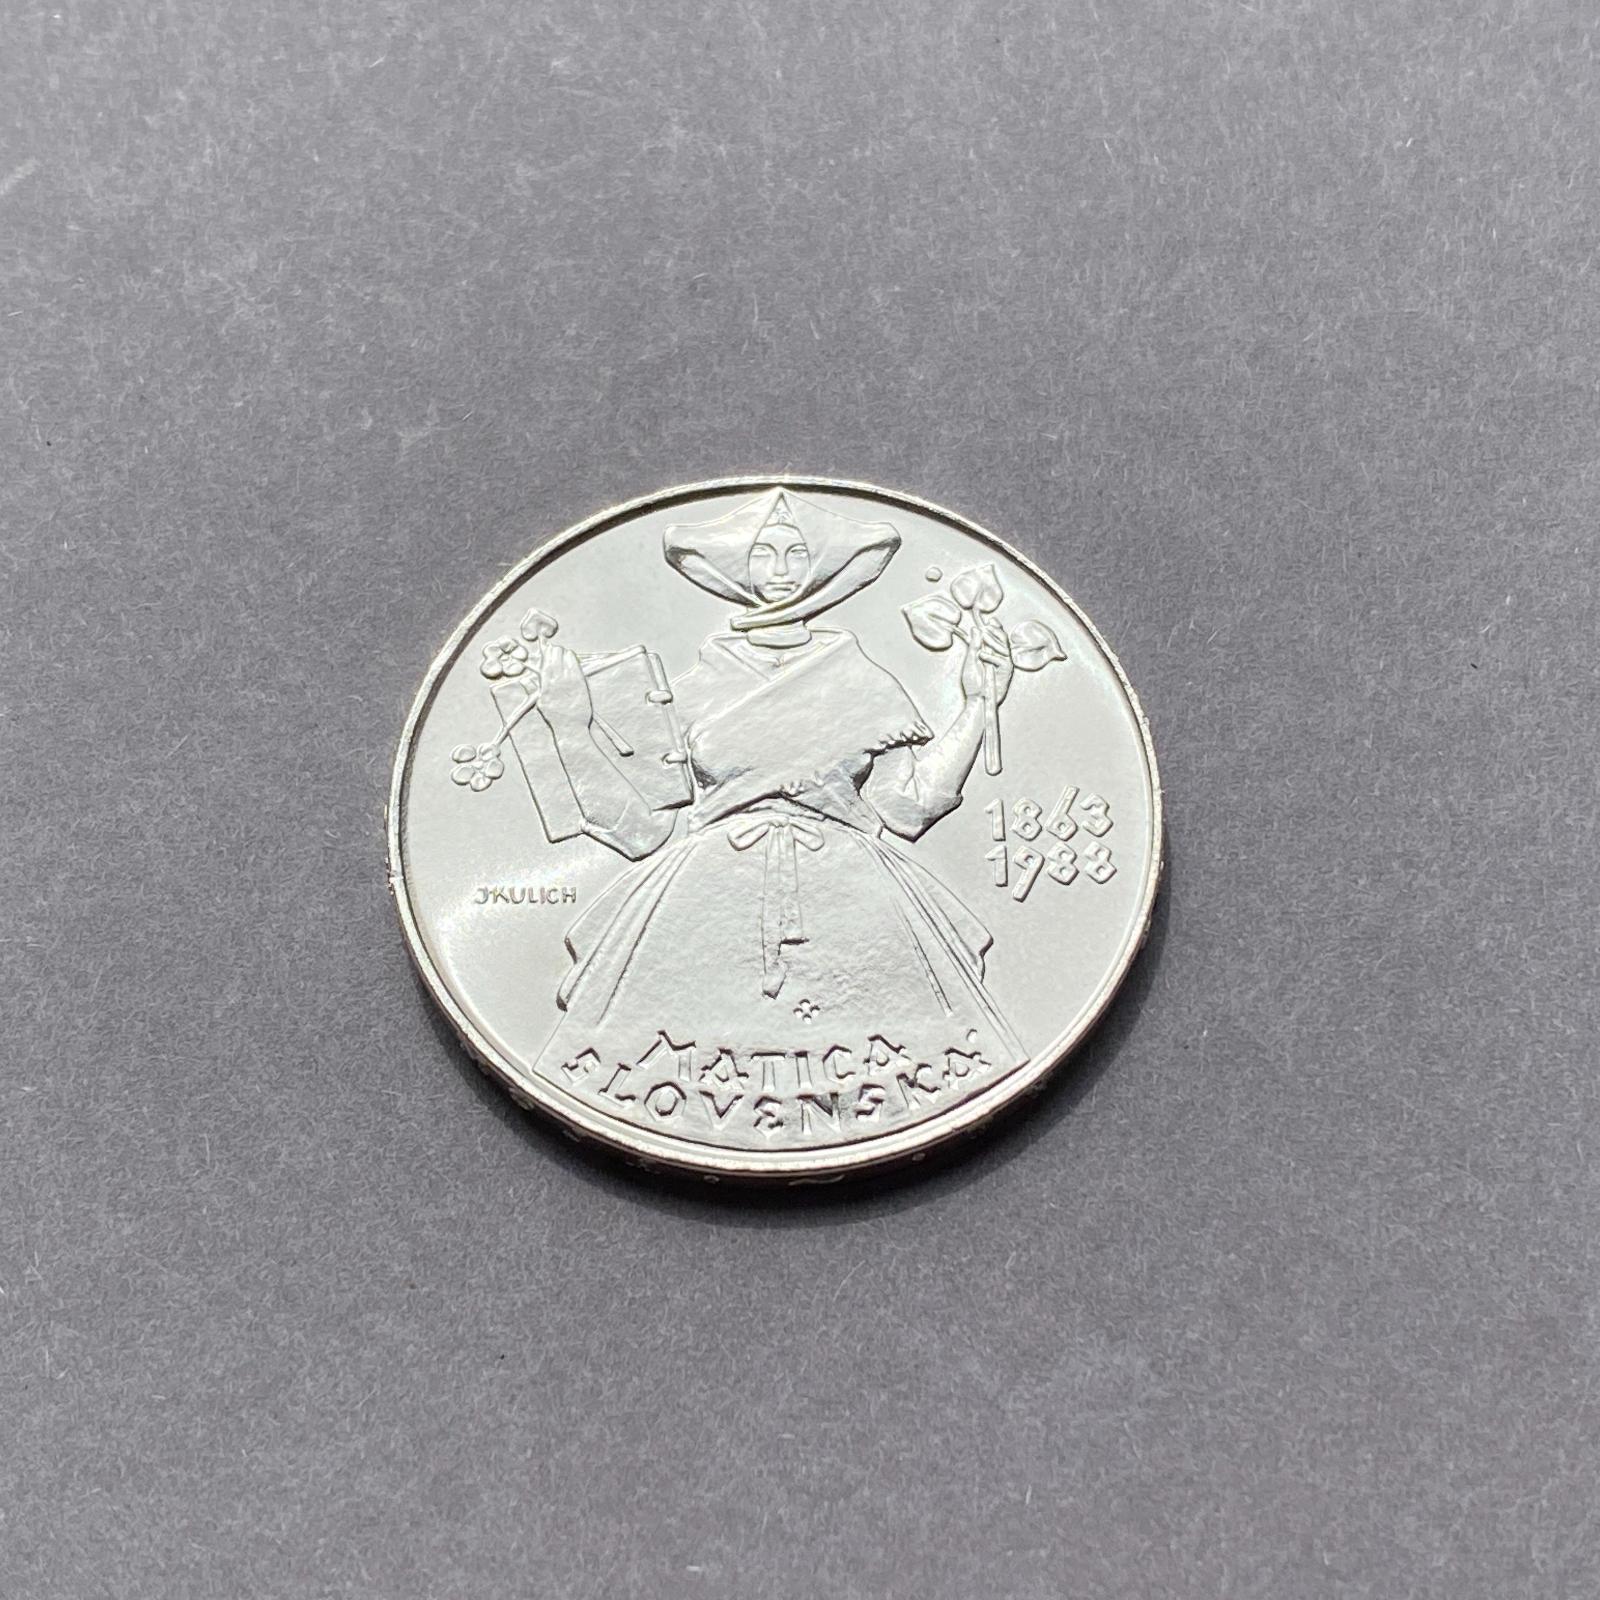 Strieborná minca, 500 Kčs Matica Slovenská - S 240404/17 - Numizmatika